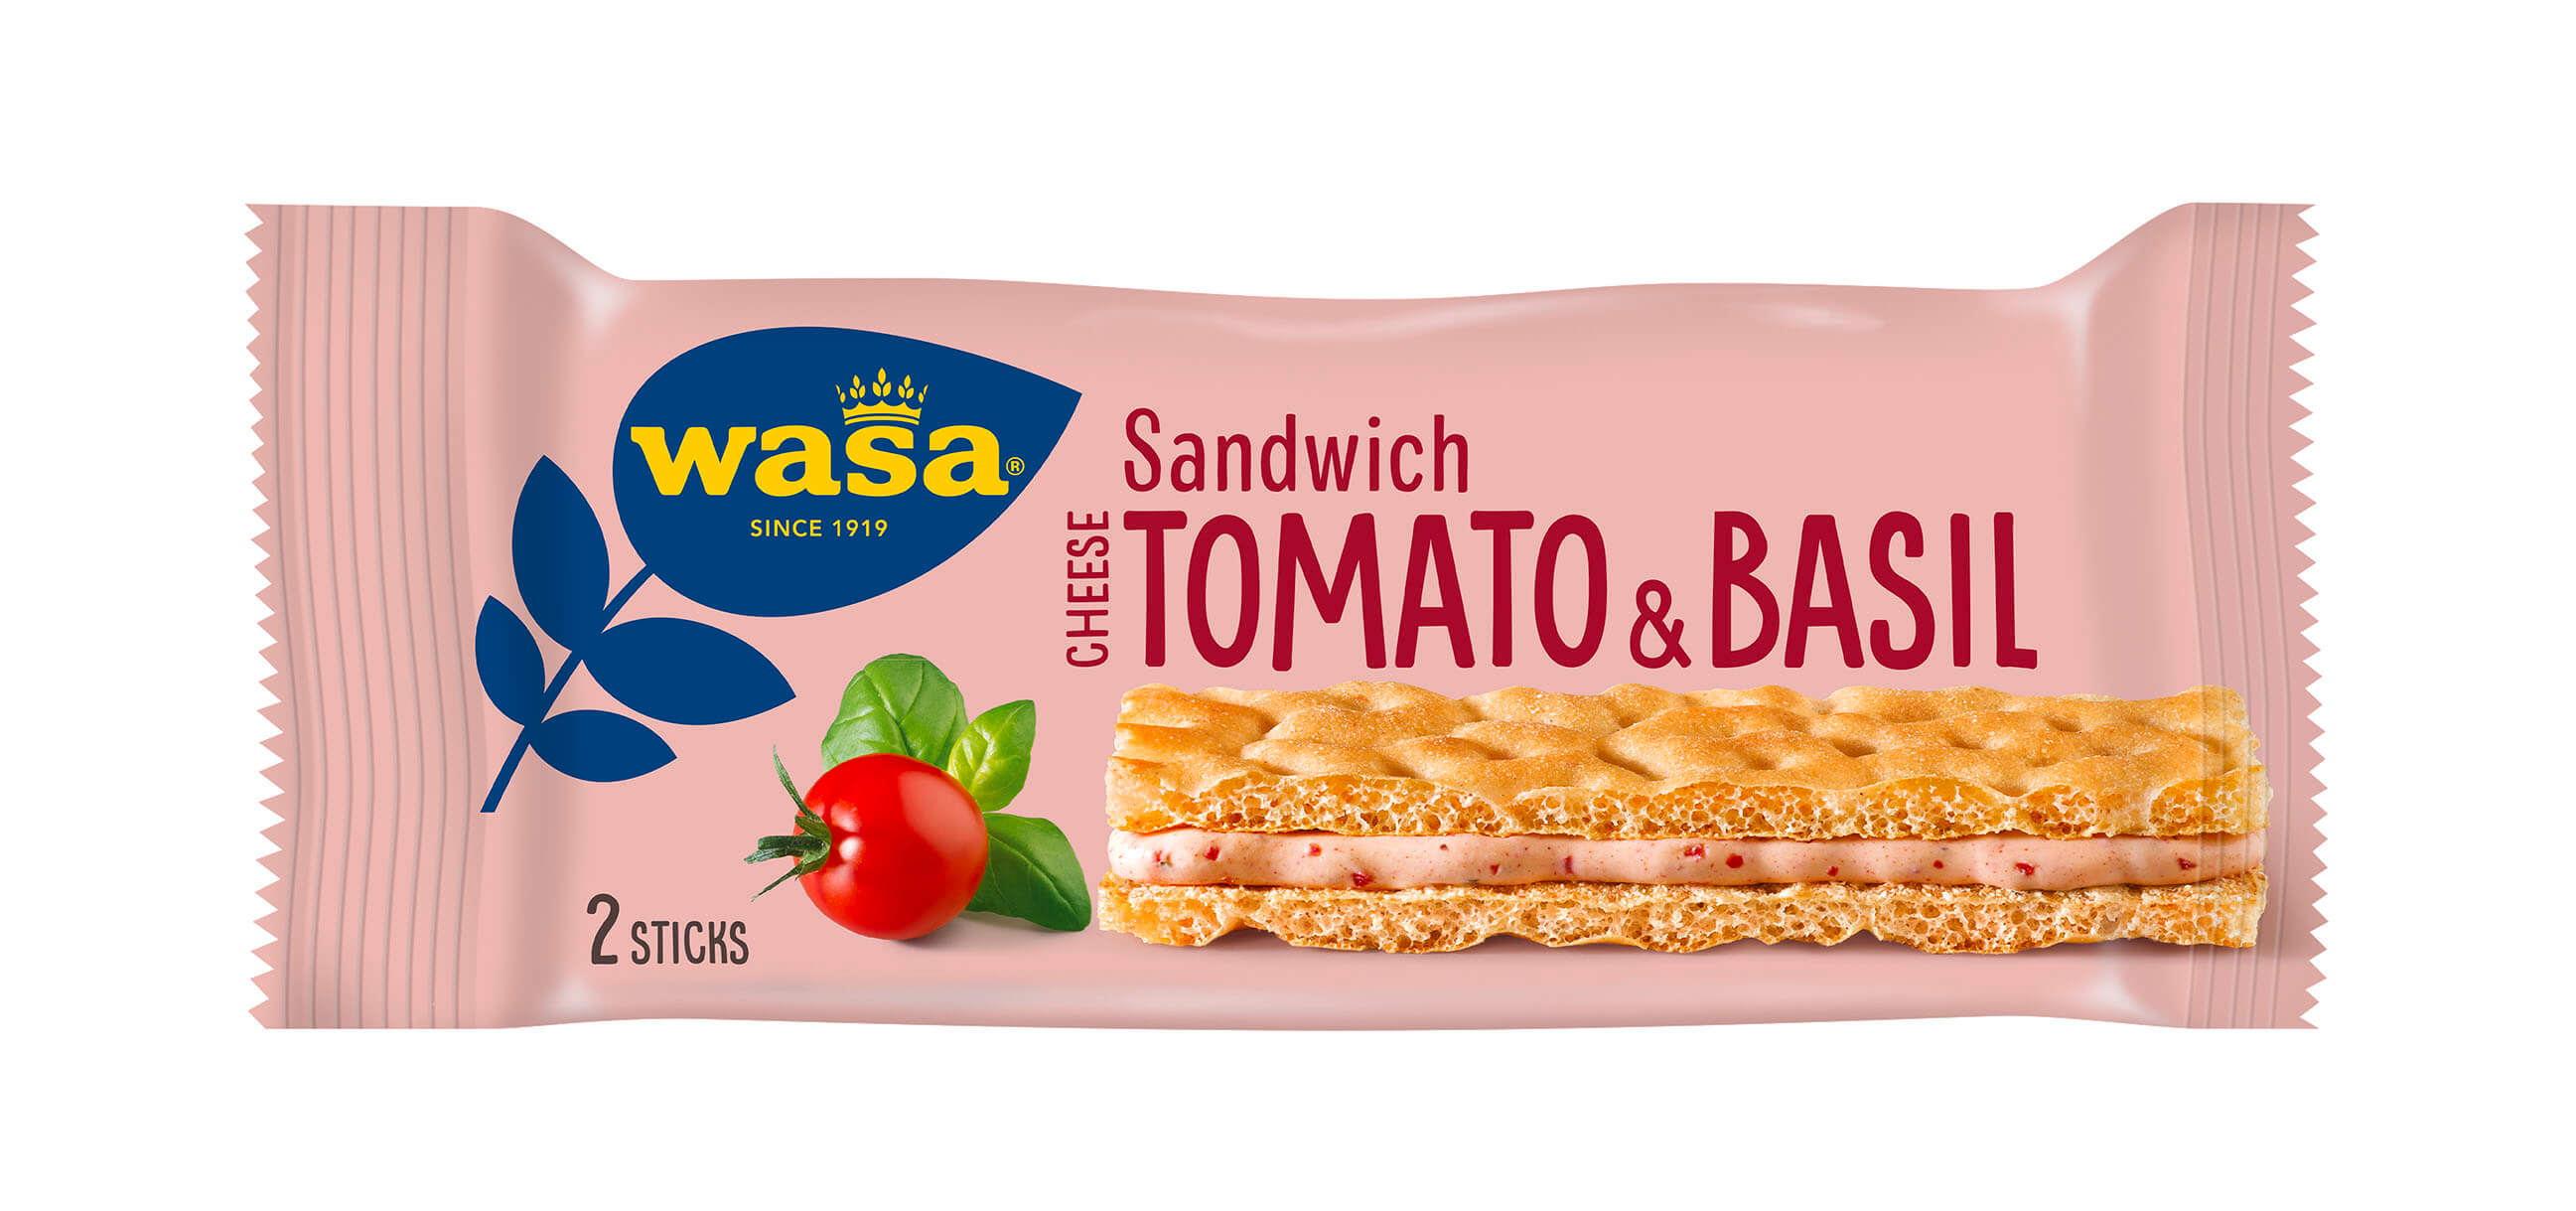 Wasa Sandwich Tomato & Basil - Upptäck det perfekta mellanmålet, knäckebröd med krämig ostfyllning. Utmärkt som enkelt mellanmål när du är på språng och som tips på mellanmål barn, efter skolan eller innan träning.